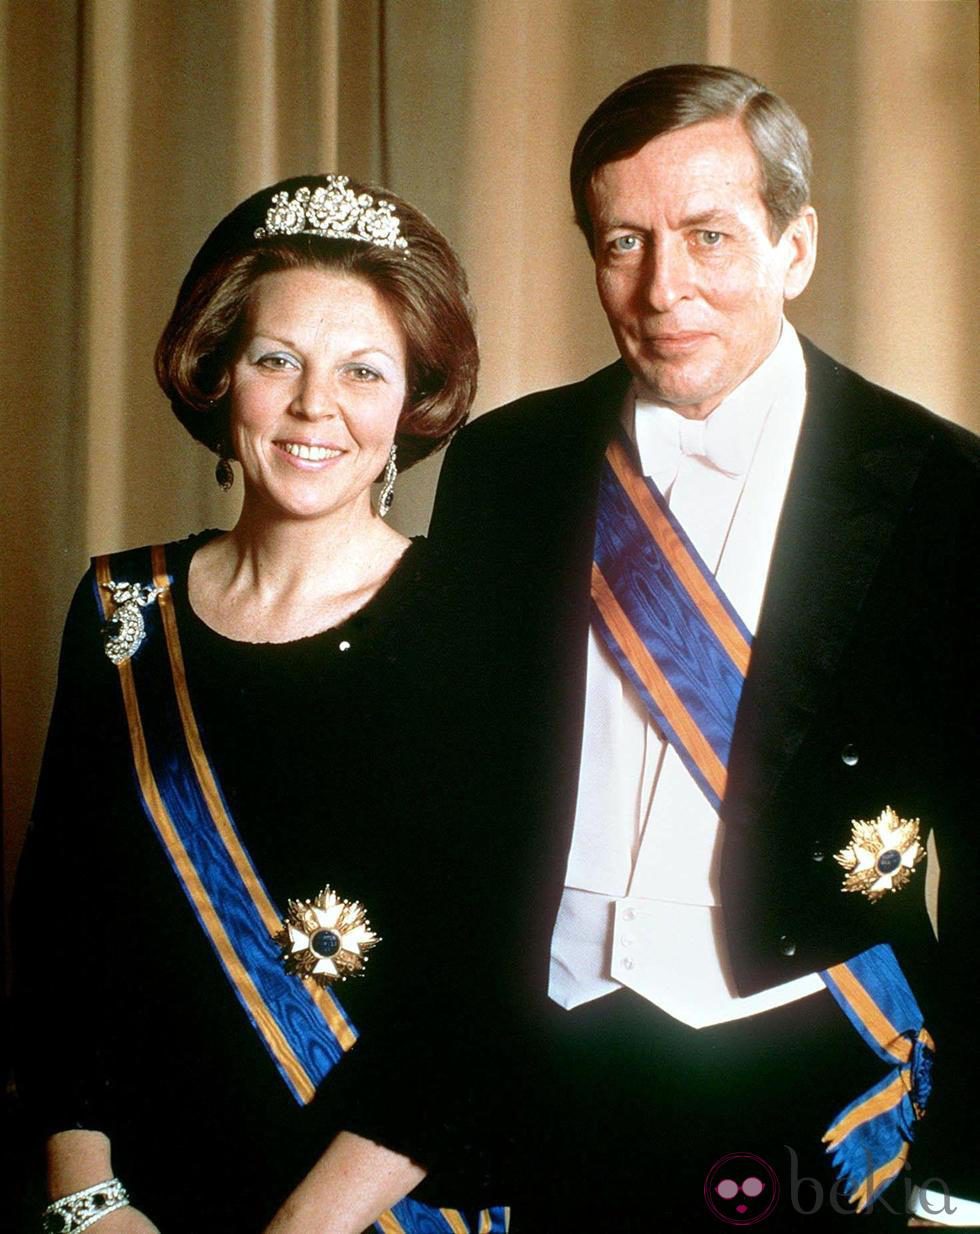 La Reina Beatriz de Holanda y el Príncipe Claus